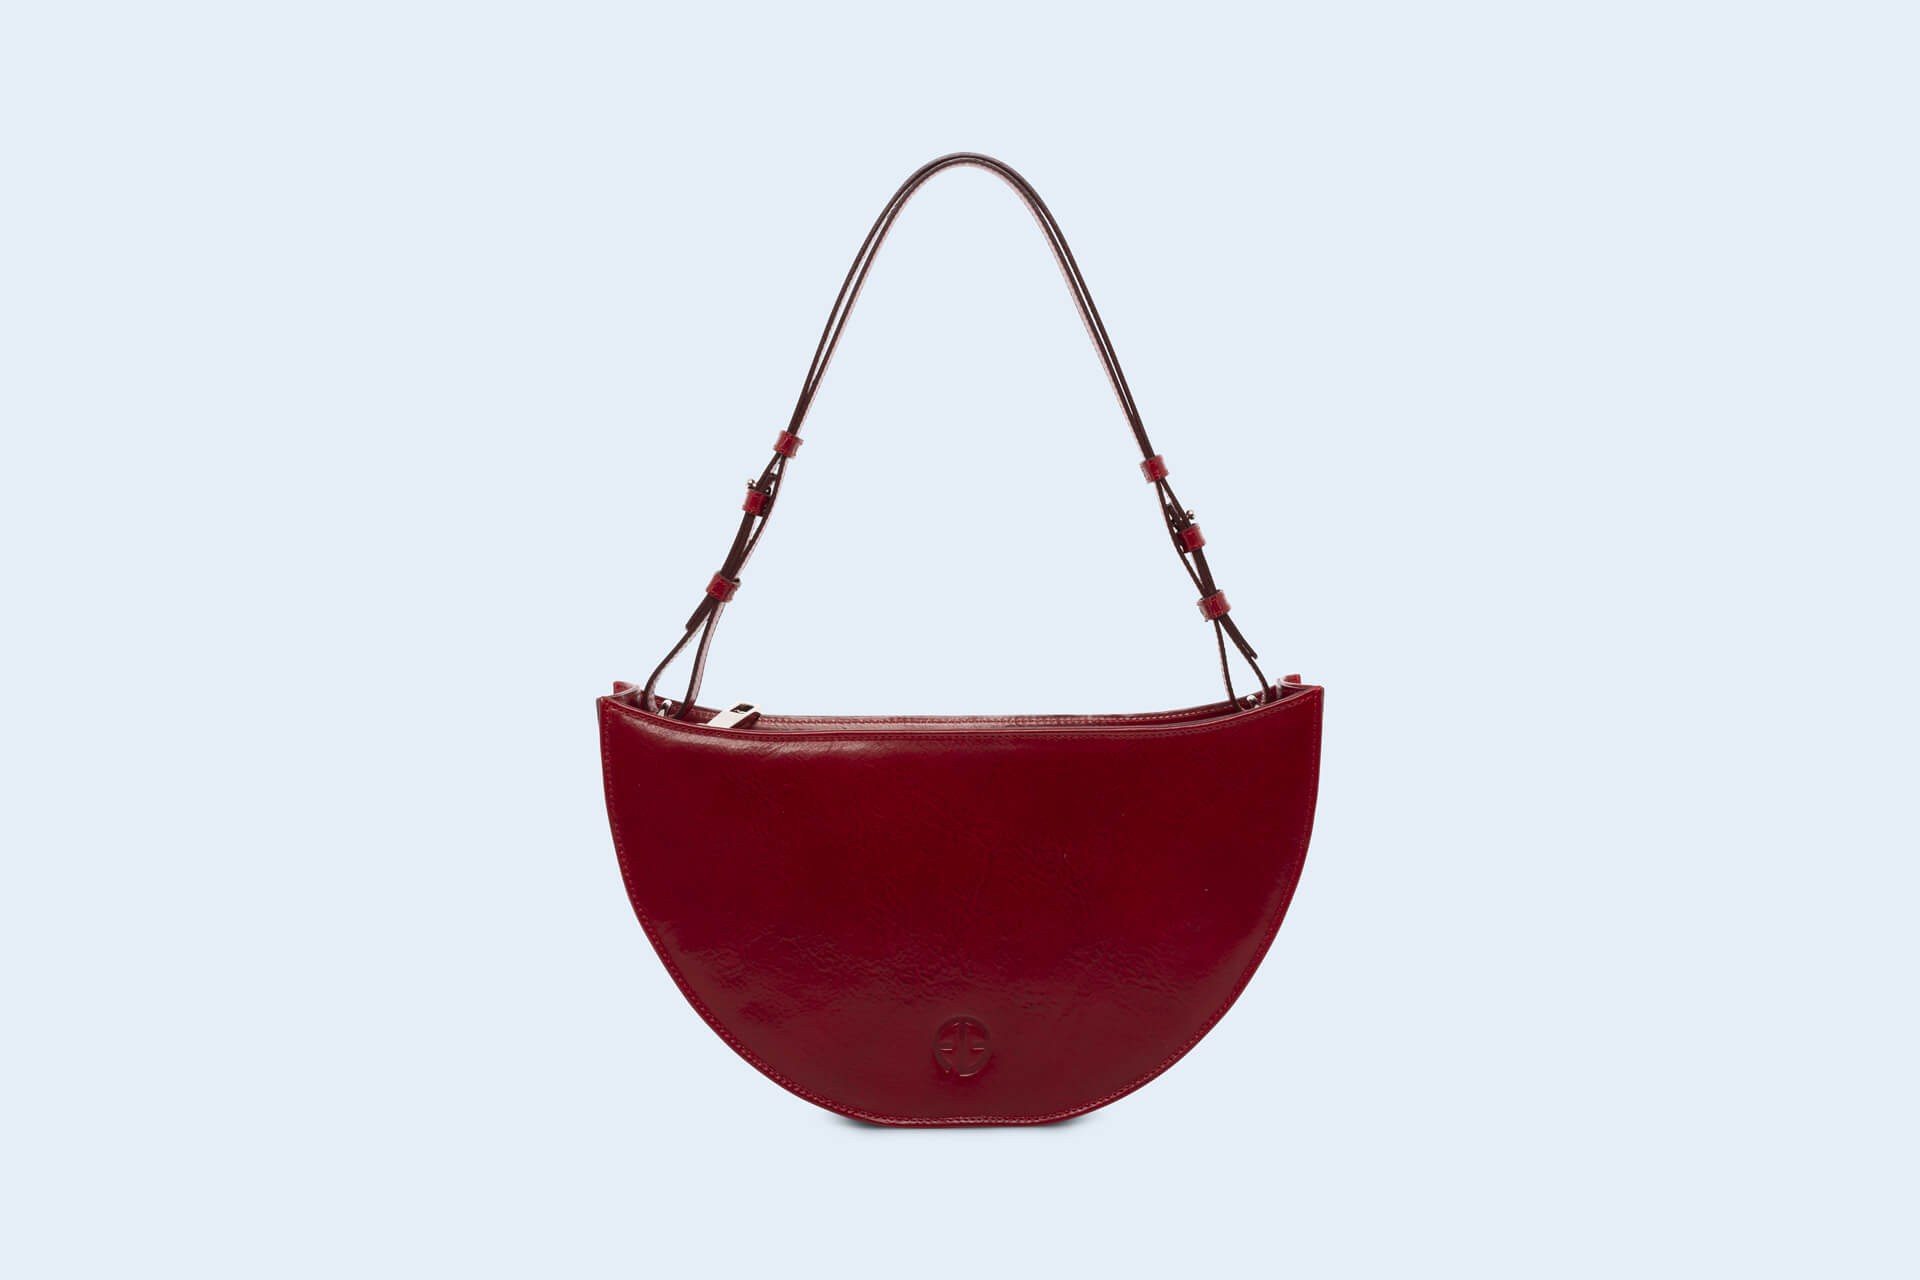 aware-bowl-bag-cherry-red-1.jpg